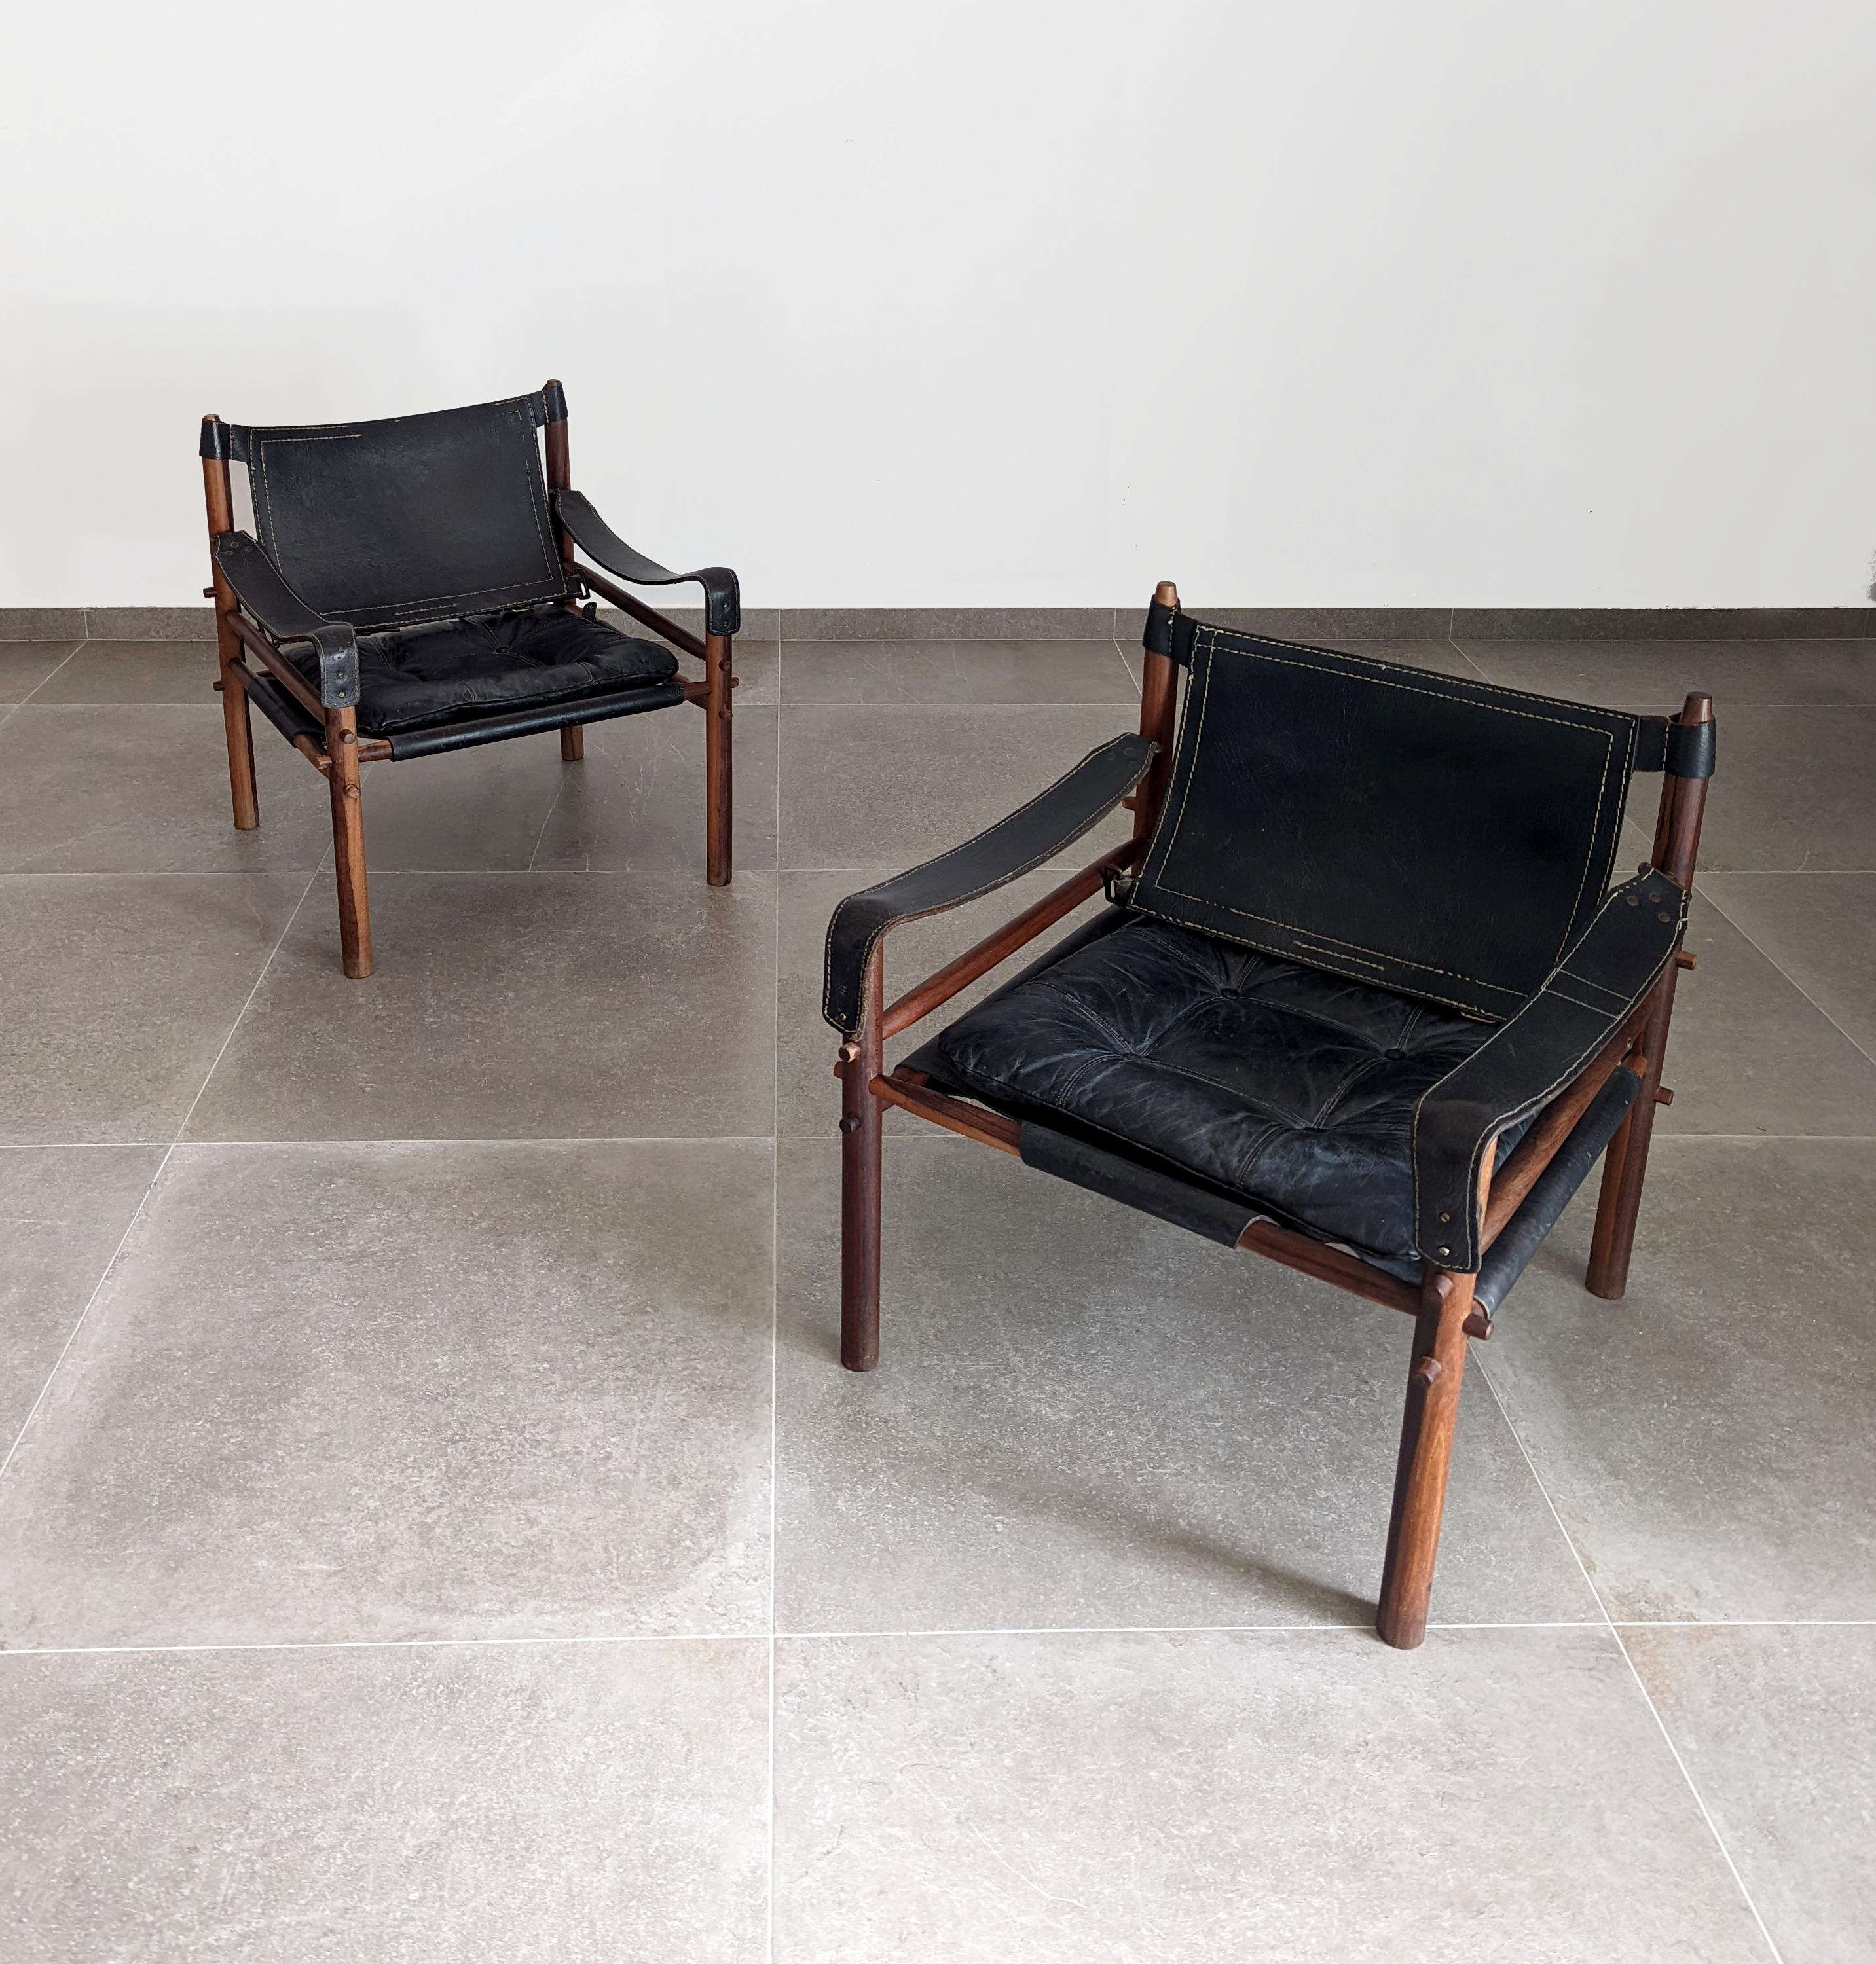 Fantastique paire de fauteuils Sirocco en bois de rose et cuir noir conçue par Arne Norell dans les années 1960, dans sa version la plus rare et recherchée par les collectionneurs, car elle a été produite par Scanform à Medellin (Colombie) en charge